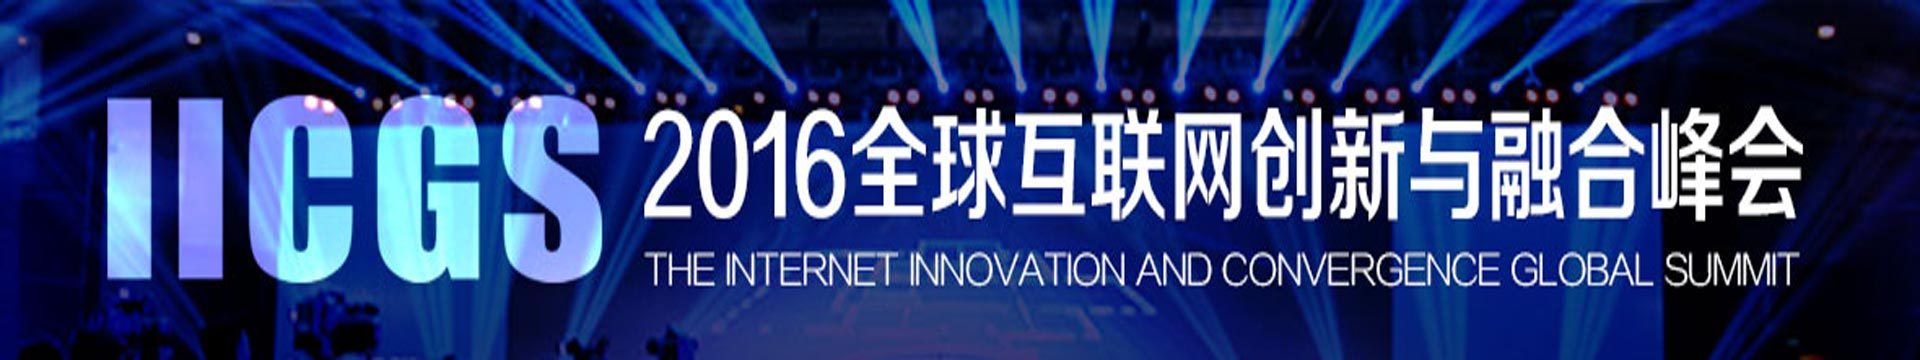 2016全球互联网创新与融合峰会